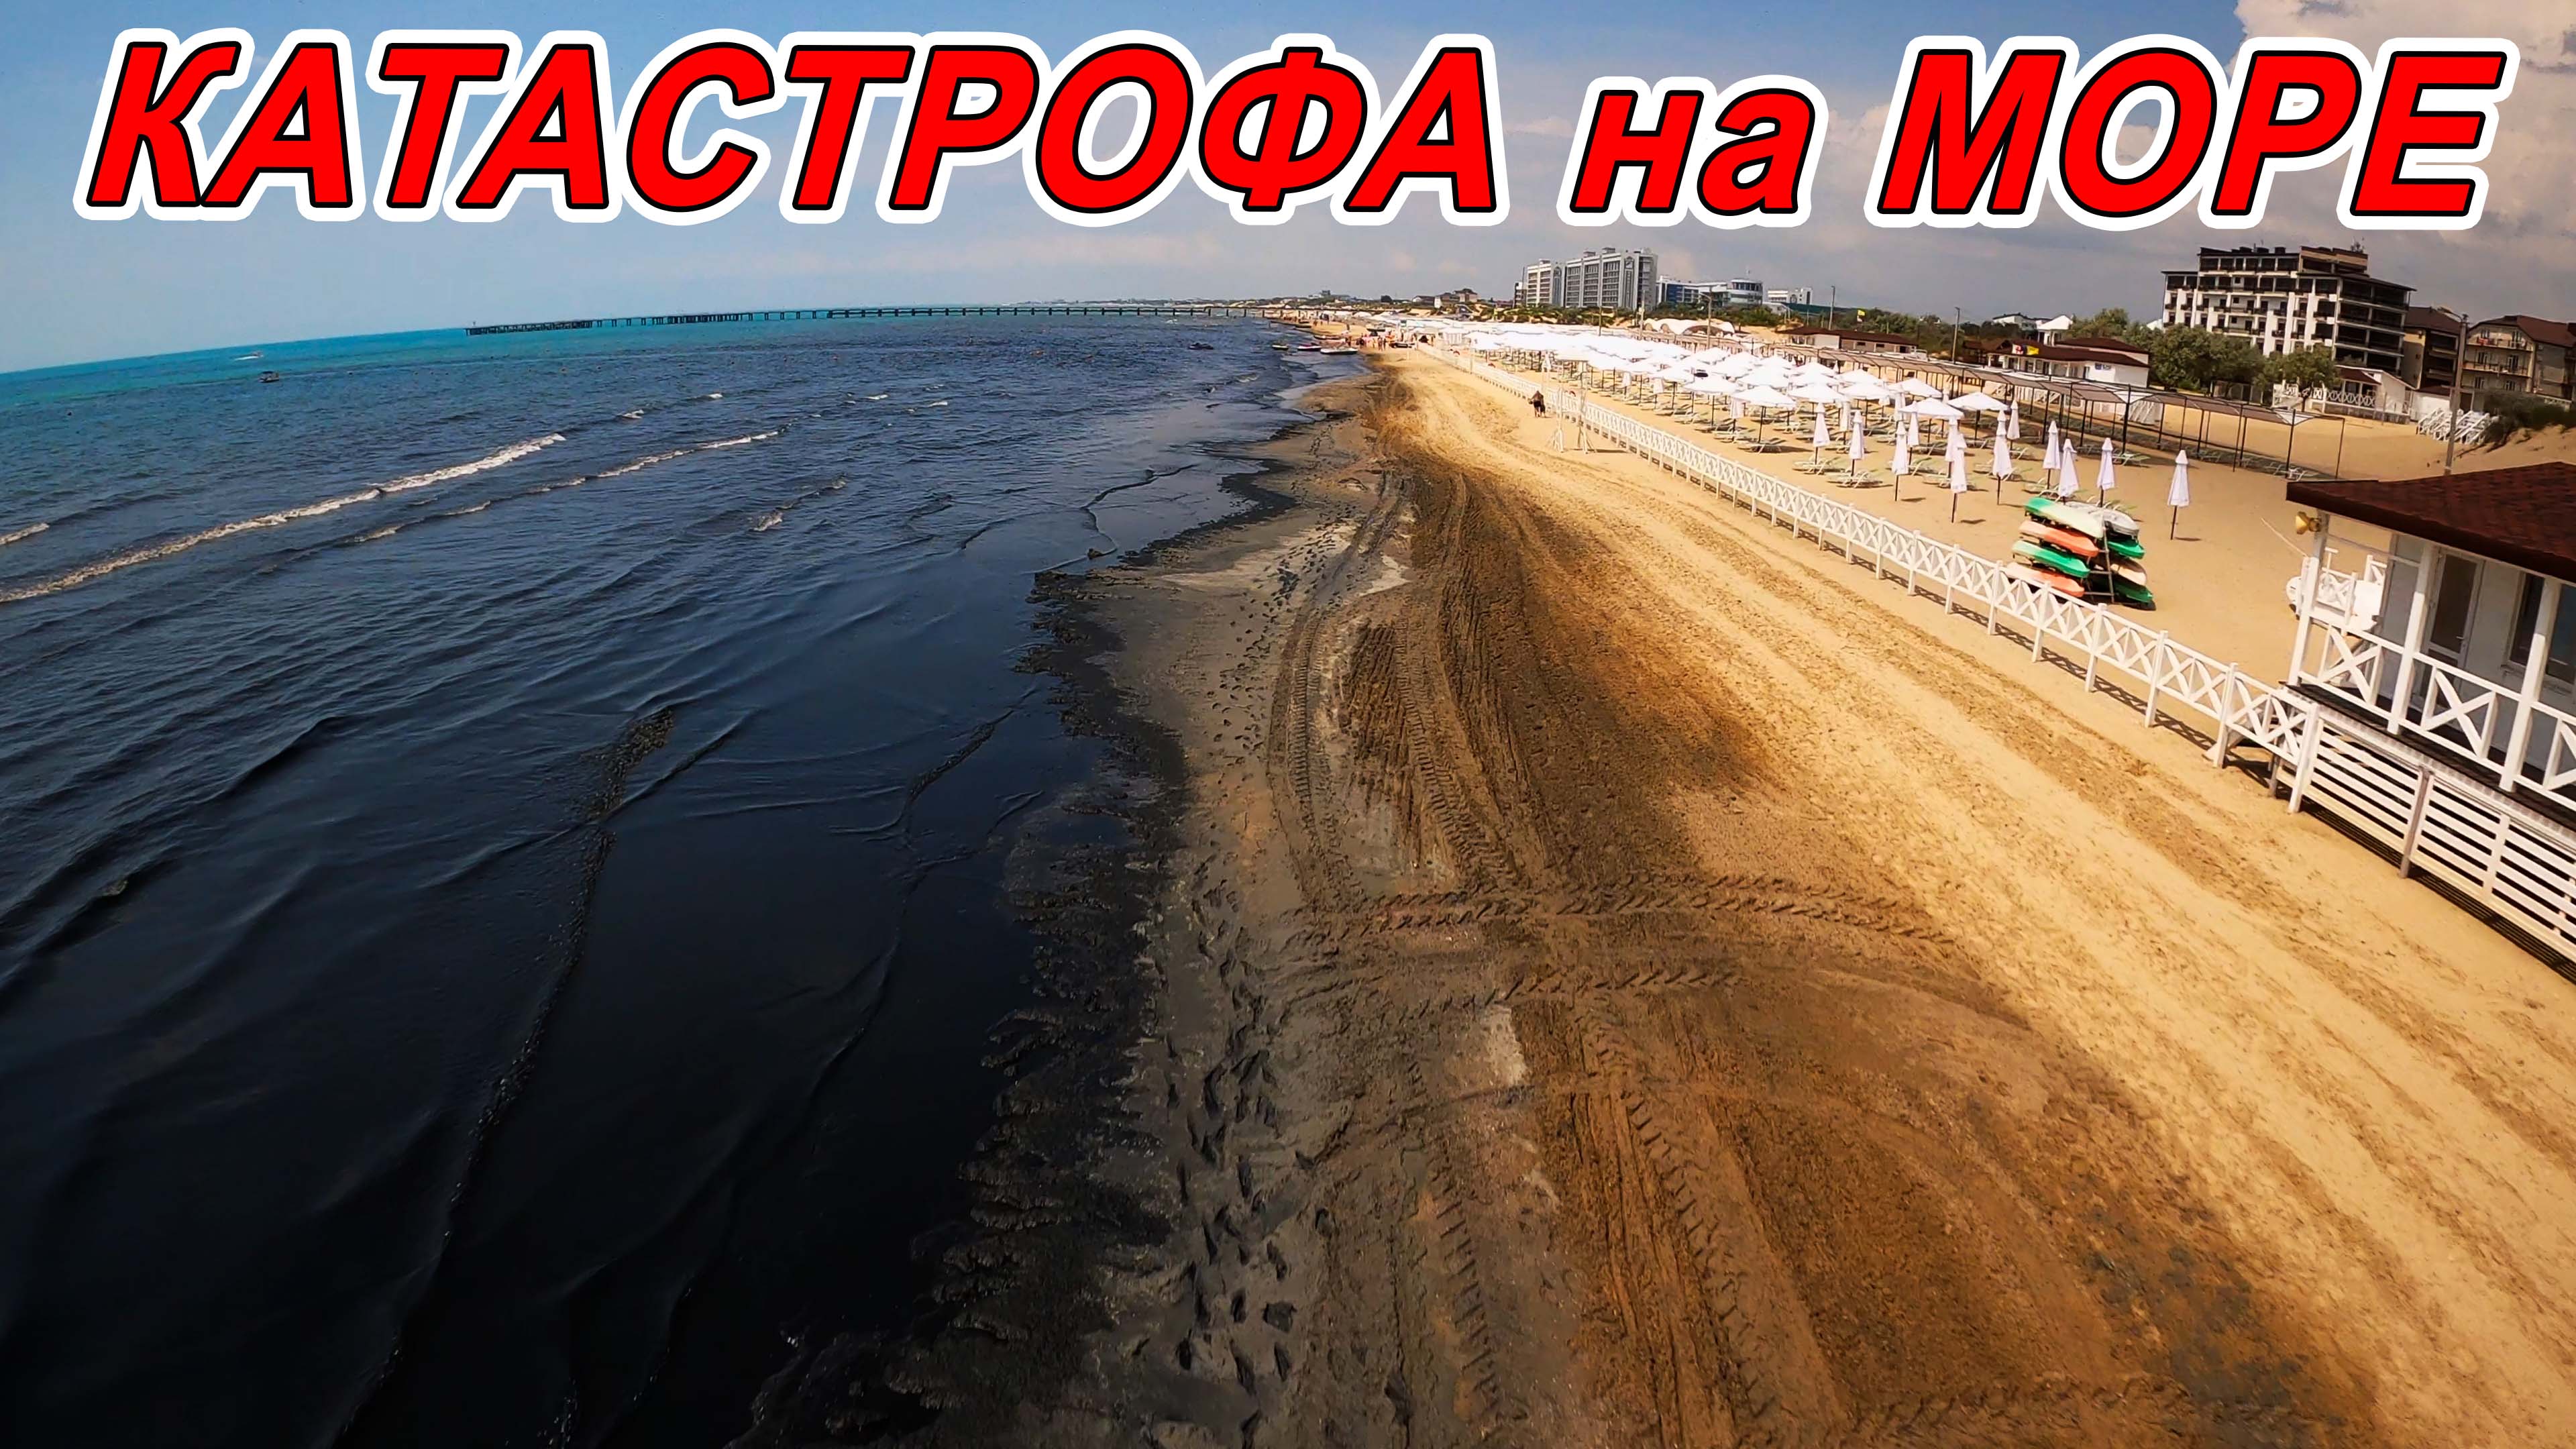 Каспийское море пляж